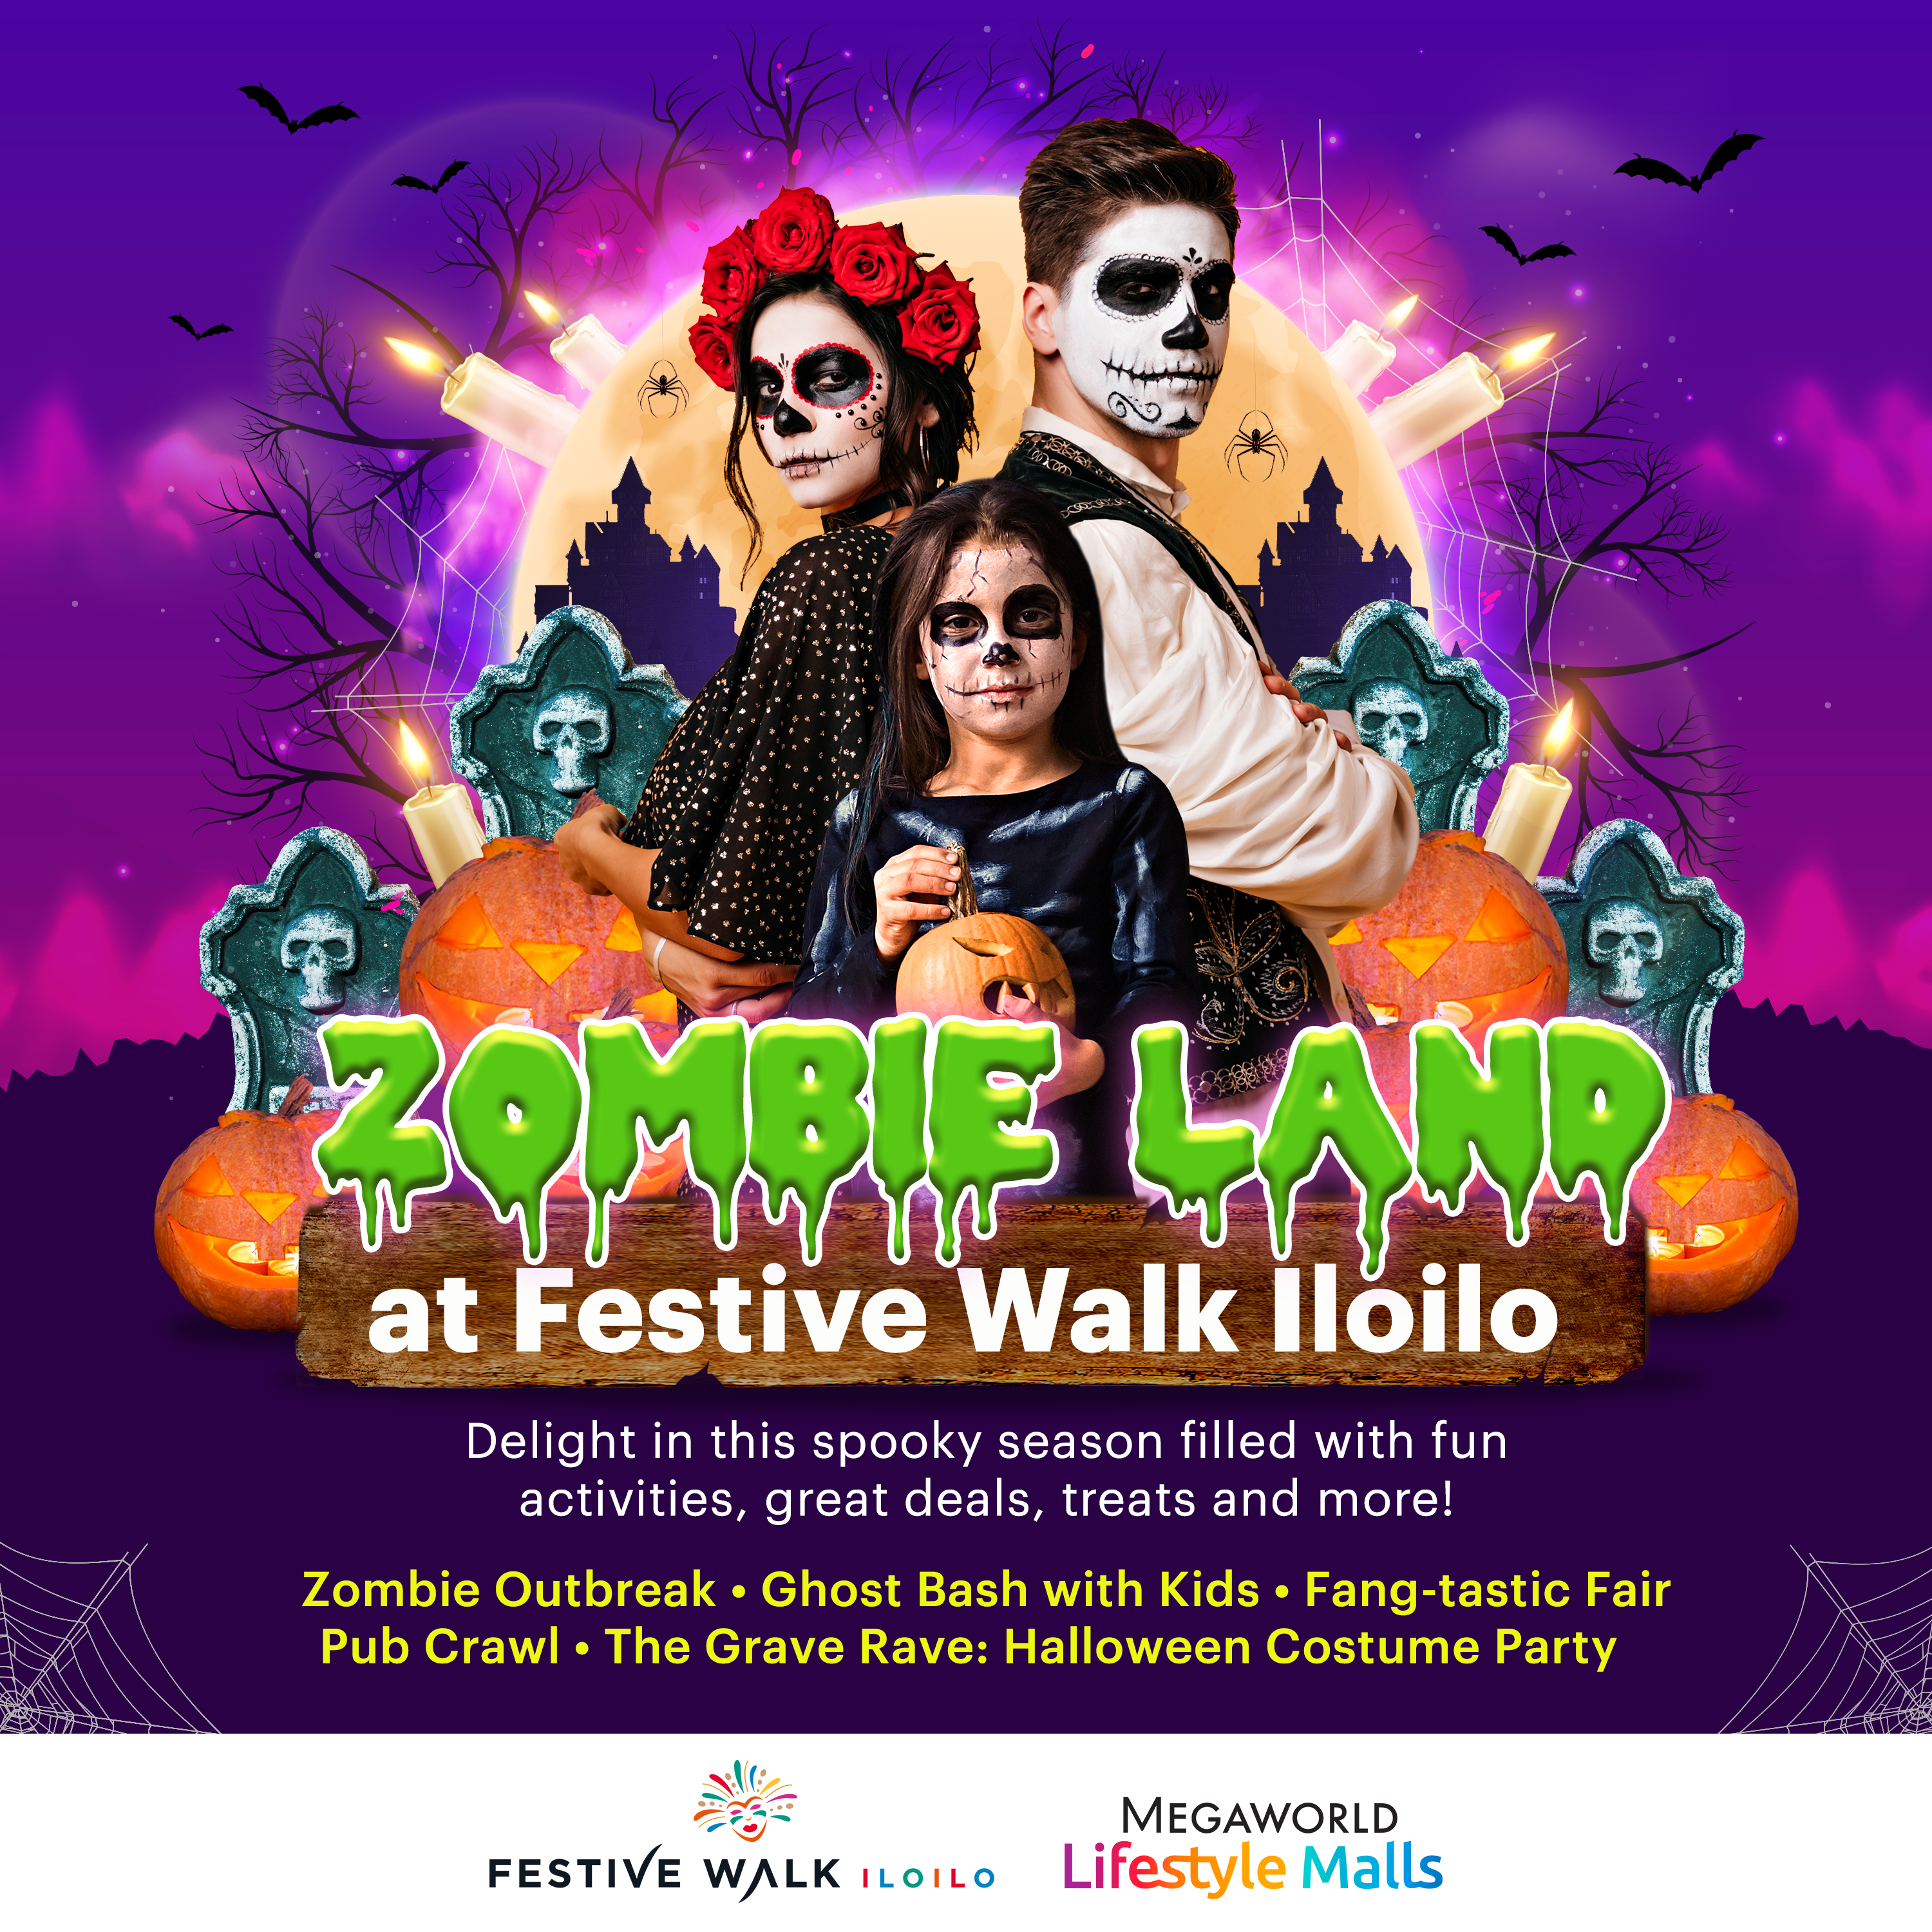 Iloilo_Festive_Walk_Halloween_2_In-line.png